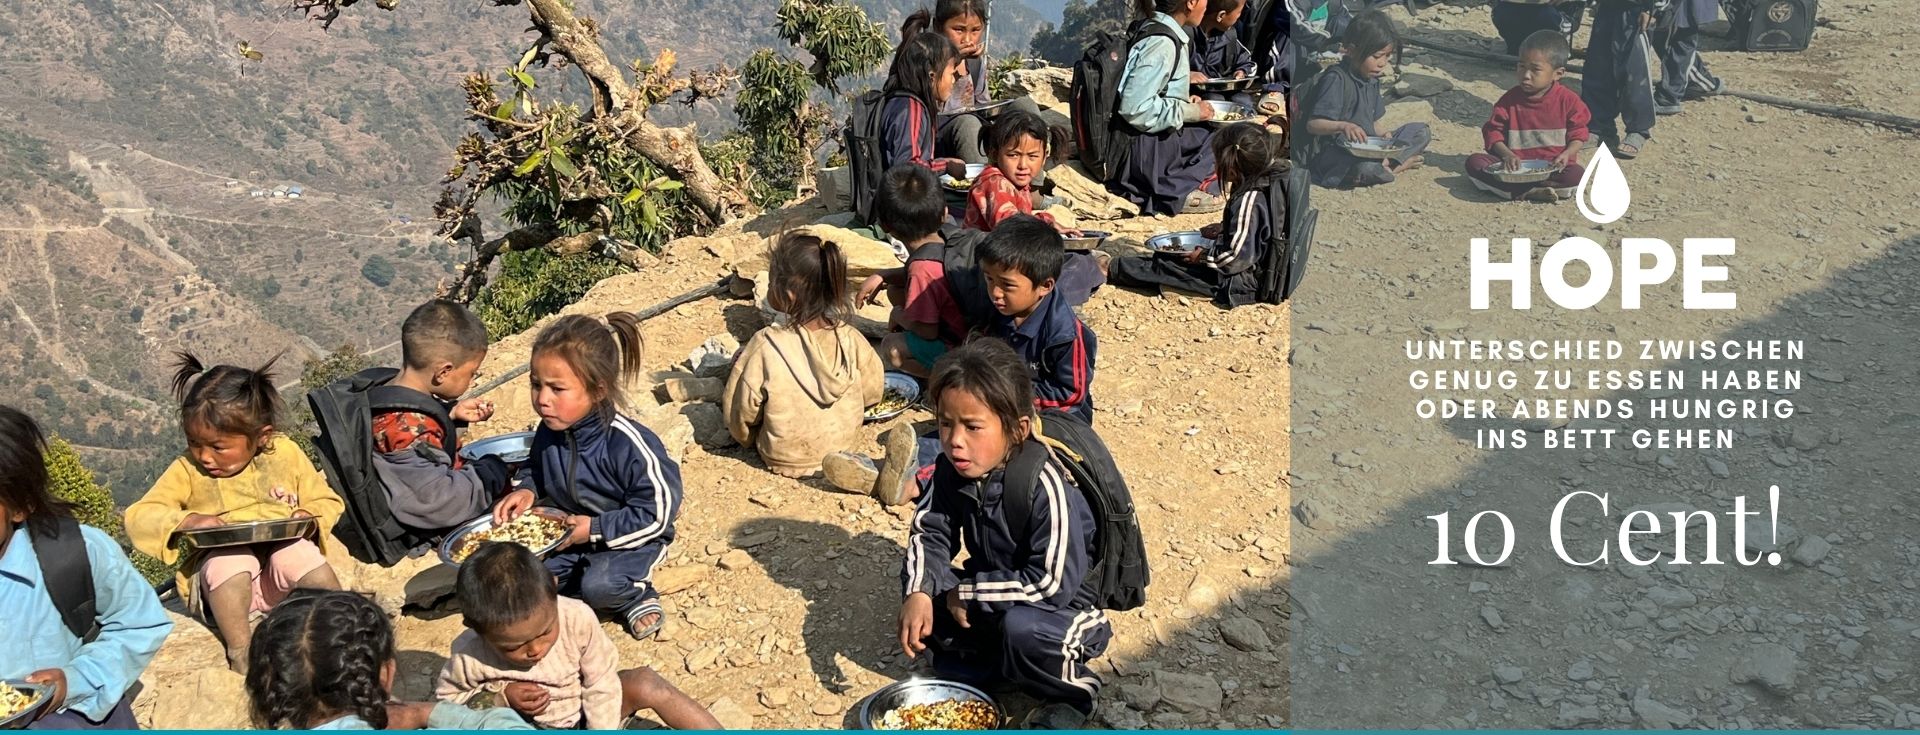 Hunger Stillen, Kinder Nepal, Hunger, Speise, Not